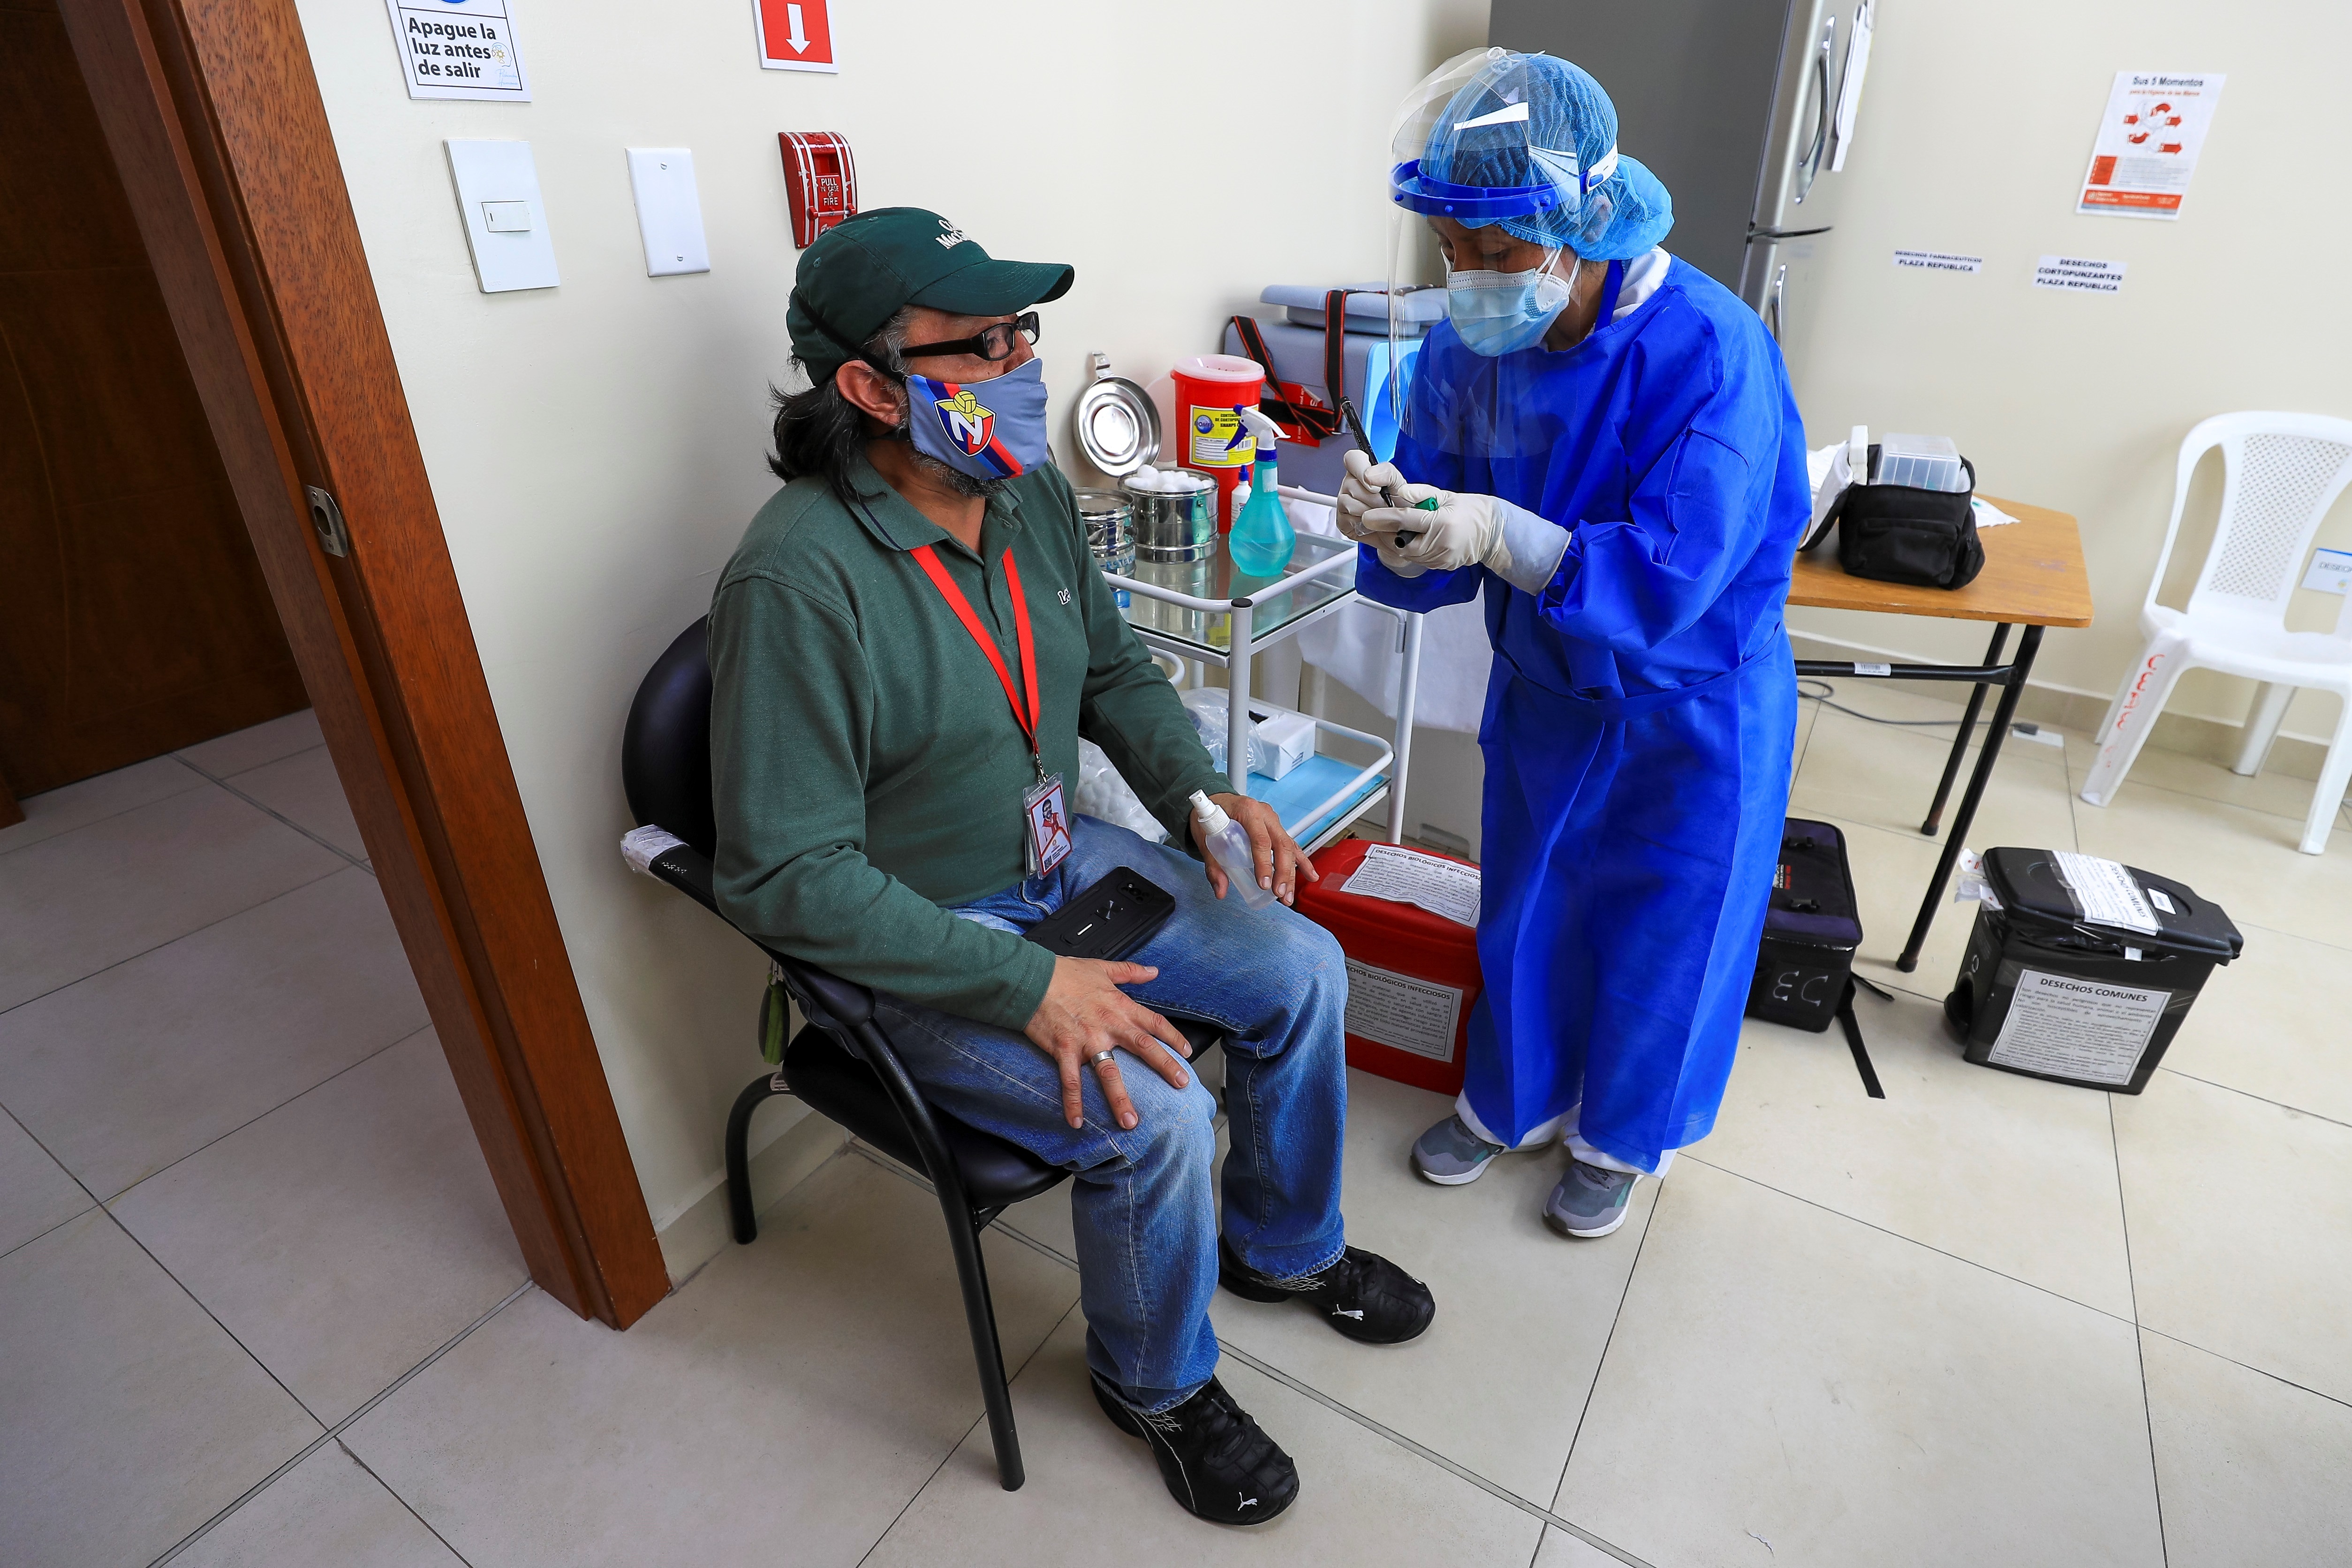 Los casos de coronavirus en el mundo tienen un repunte debido a la variante ómicron. (Foto Prensa Libre: EFE)